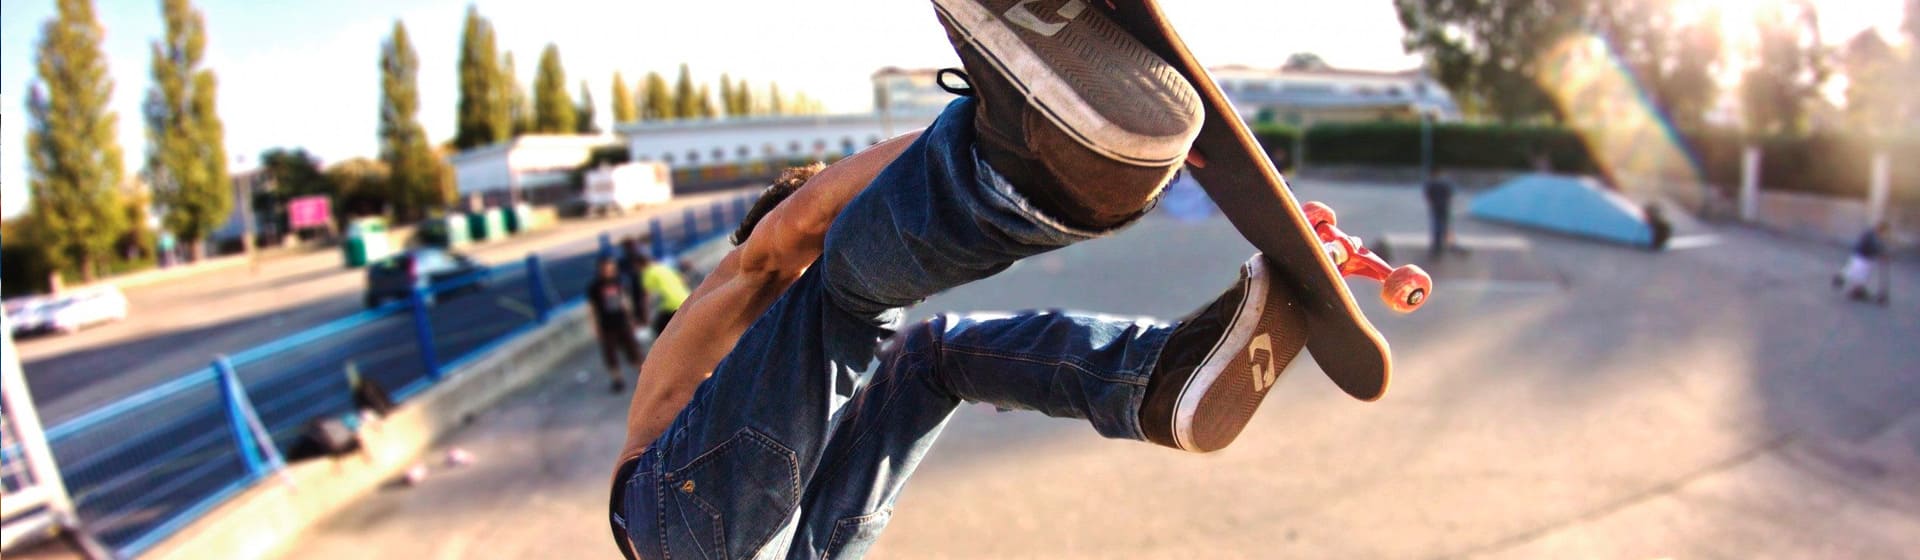 Скейтбординг - Мерч и одежда с атрибутикой